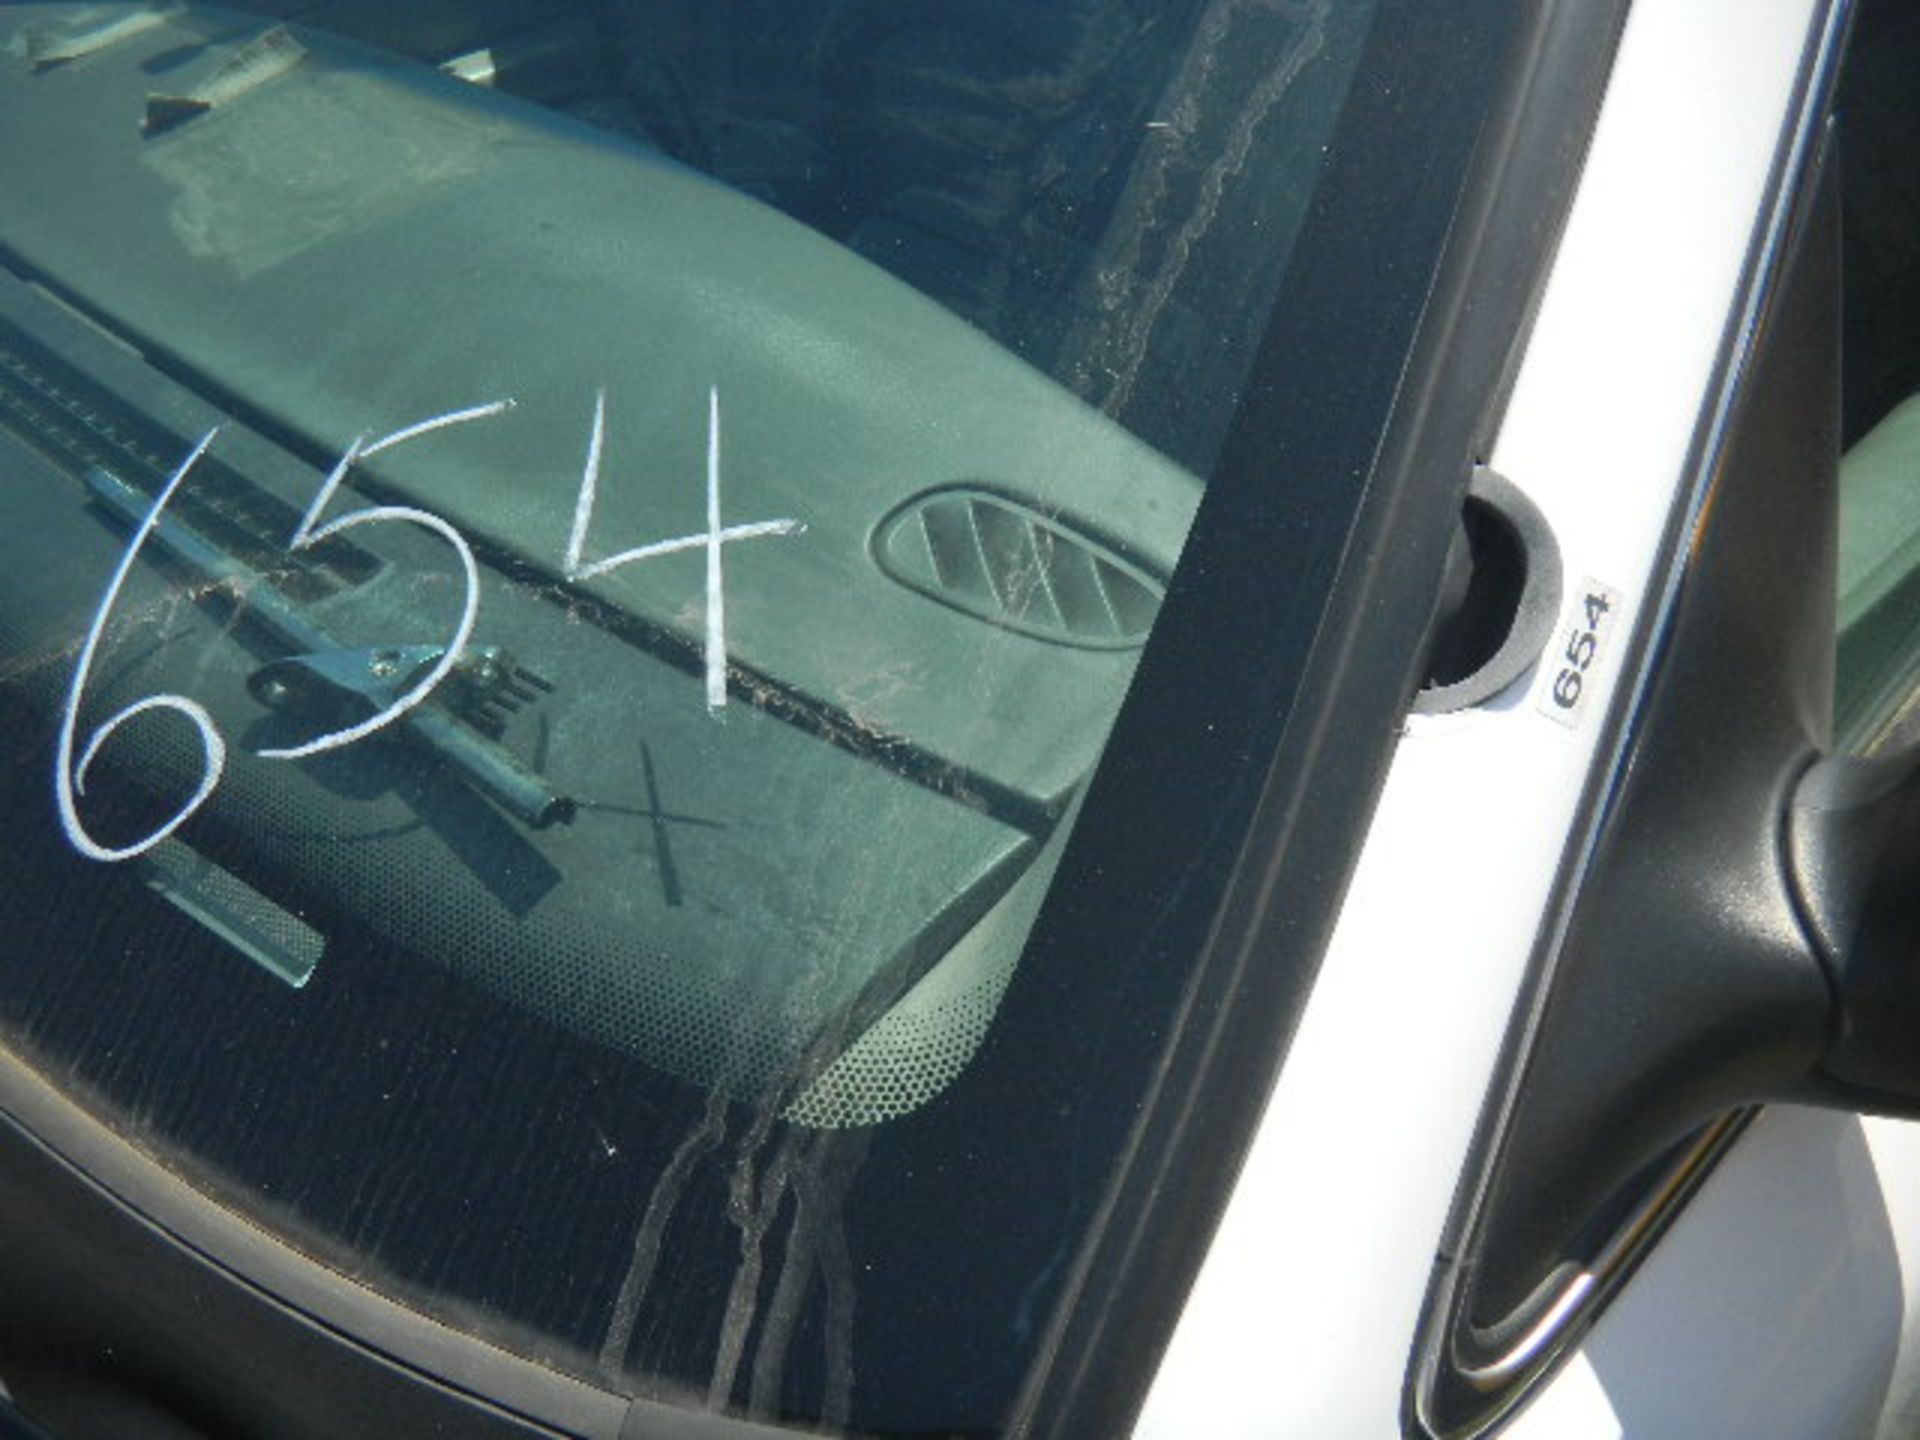 2009 Ford Crown Vic Black/White Patrol Car - Asset I.D. #654 - Last of Vin (139087) - Image 8 of 9